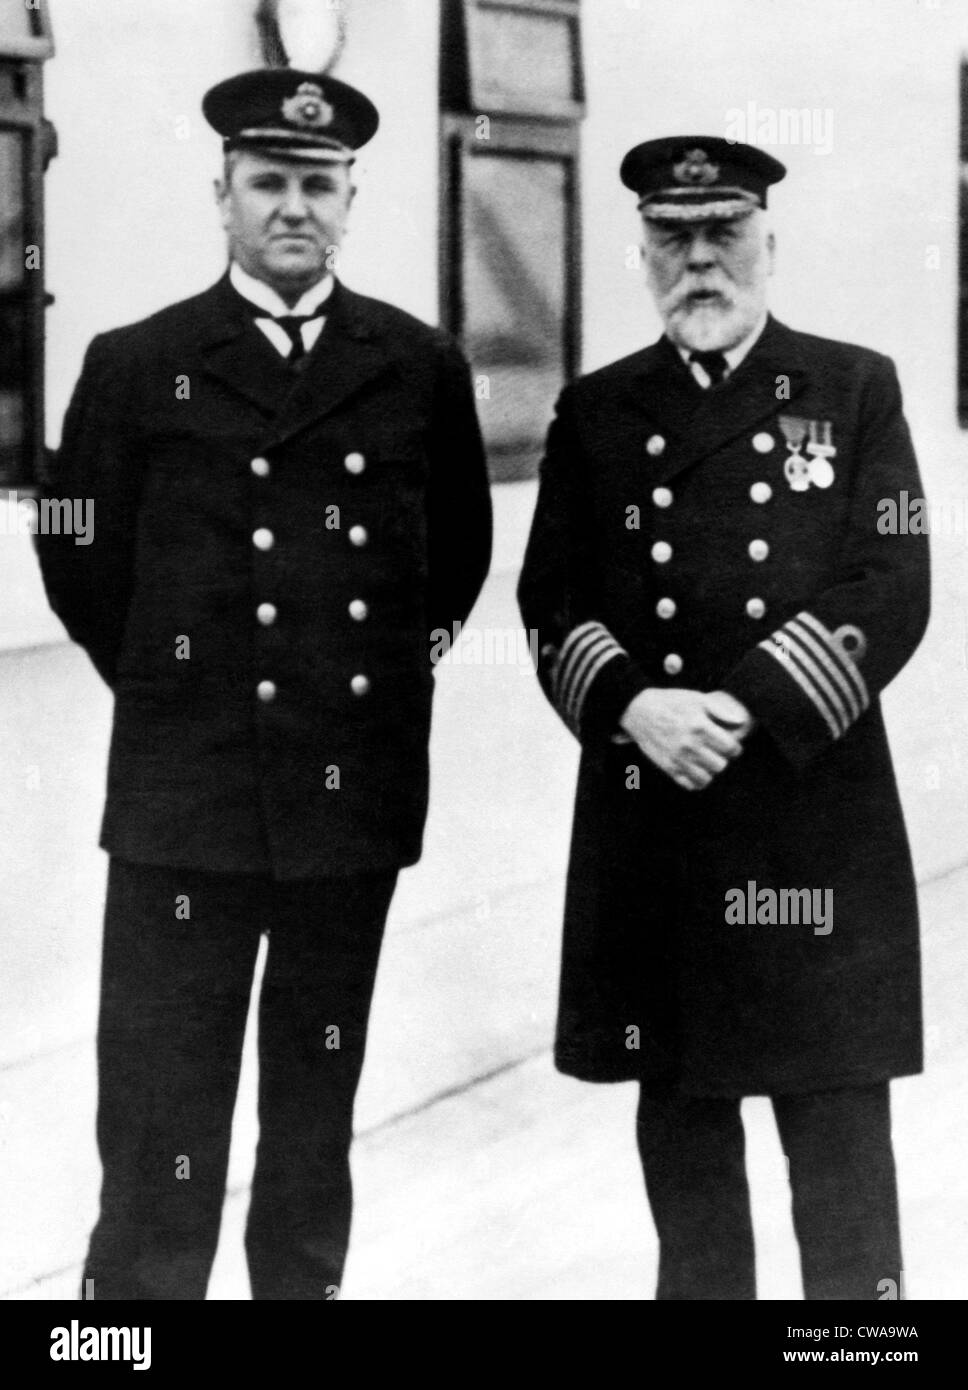 Il capitano Edward Smith (destra), del RMS Titanic, che affondò dopo un urto contro un iceberg, 1912.. La cortesia: CSU Archivi / Everett Foto Stock